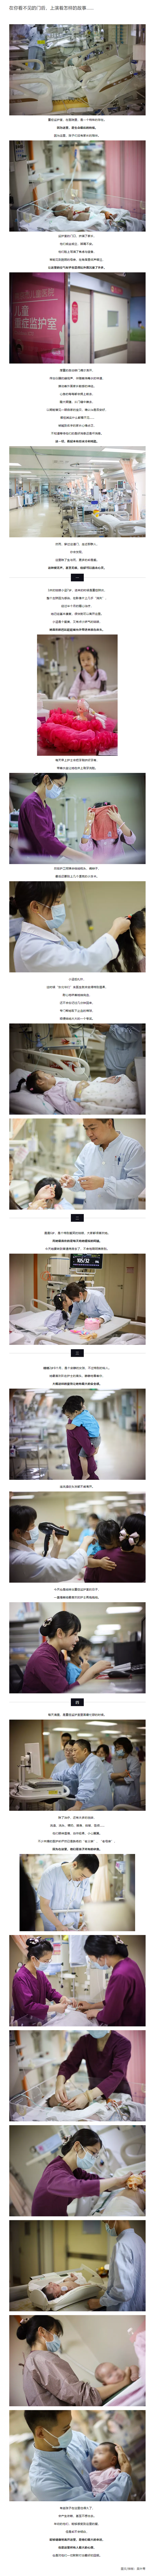 南京市儿童医院+吴叶青《在你看不见的门后，上演着怎样的故事……》.jpg